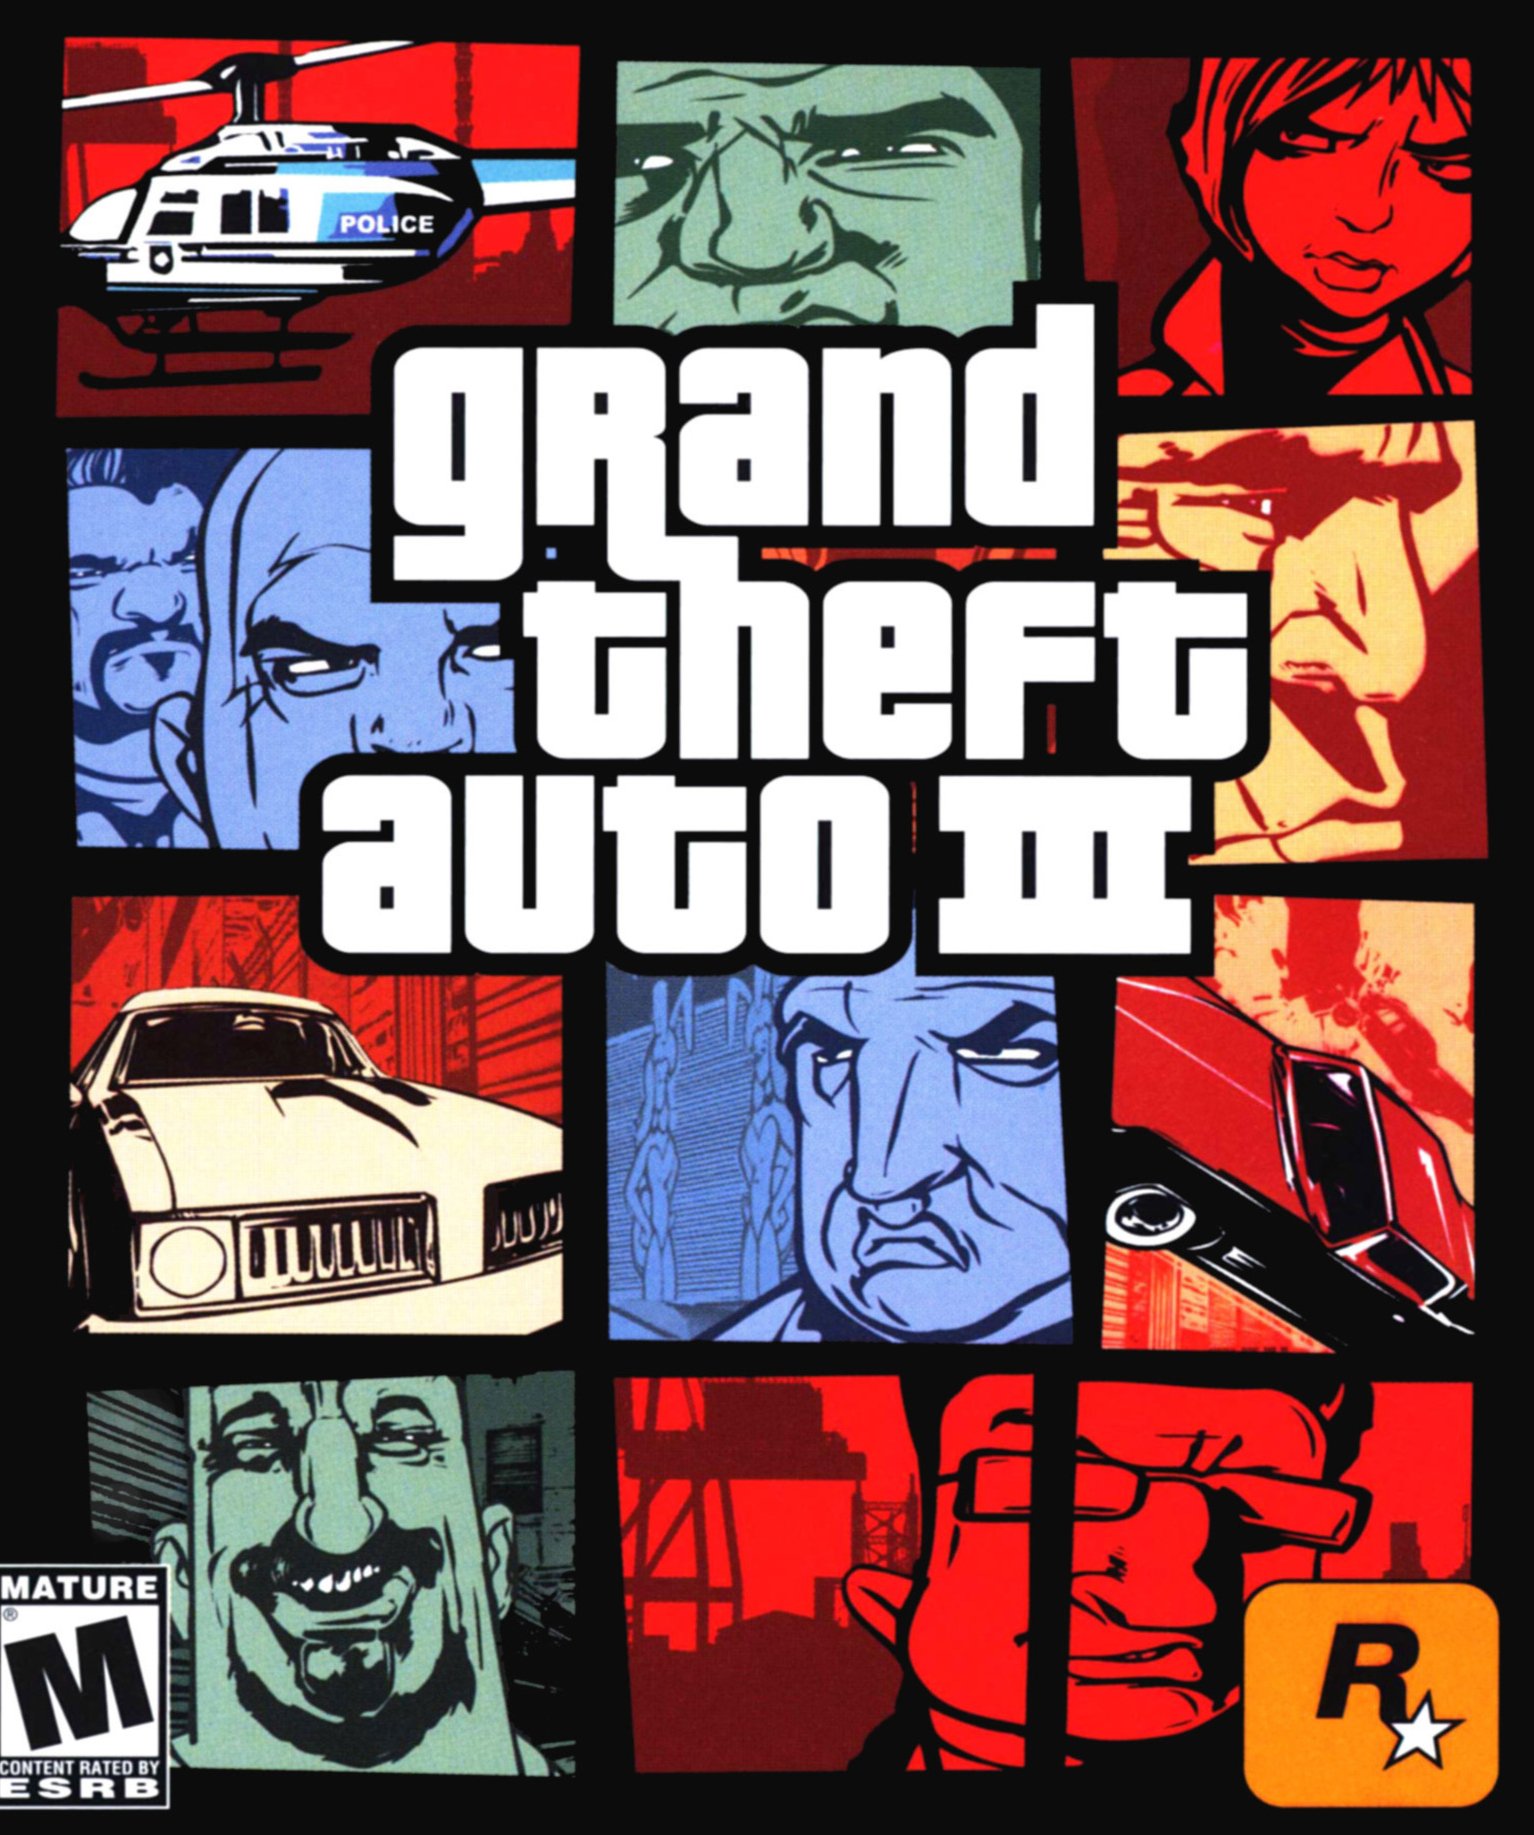 Grand Theft Auto 3 - ruScore оценки русскоязычных игровых изданий.